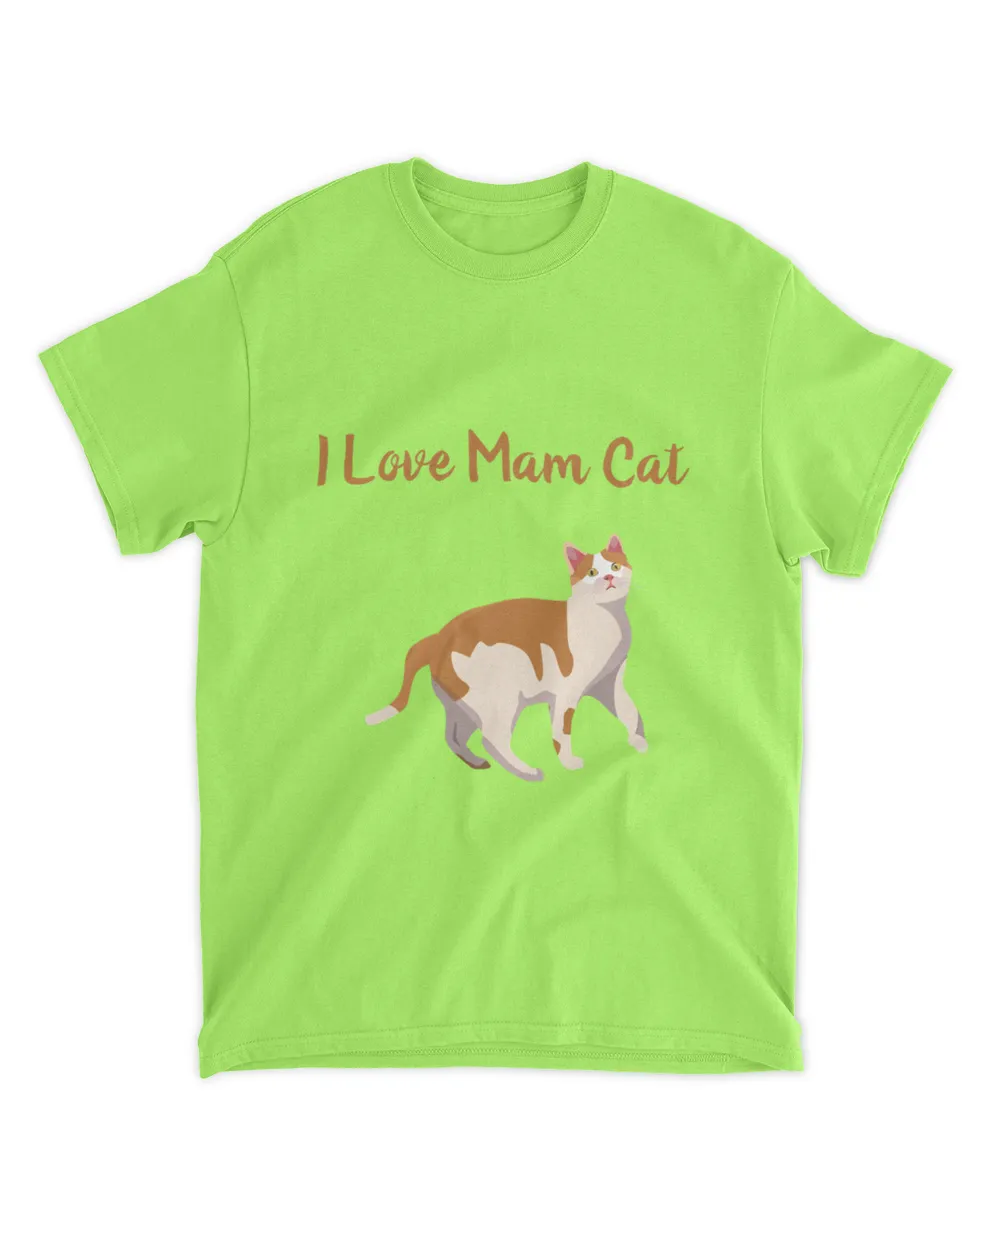 I love mum cat